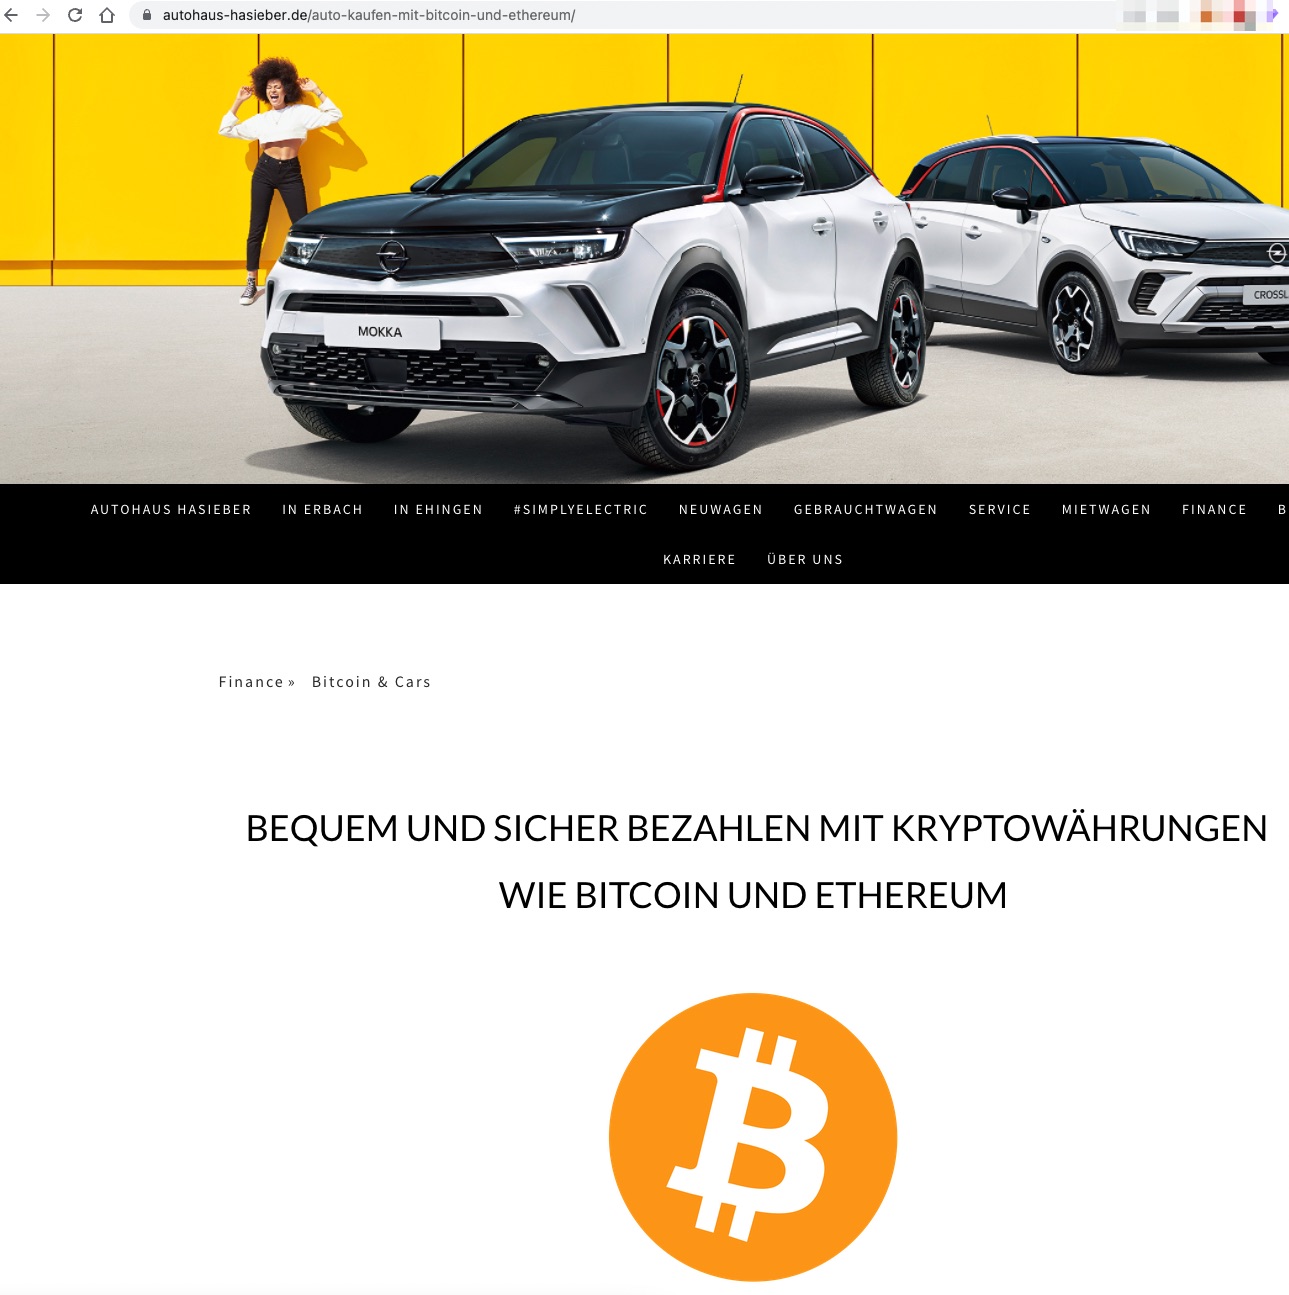 Autohaus Hasieber akzeptiert Bitcoin